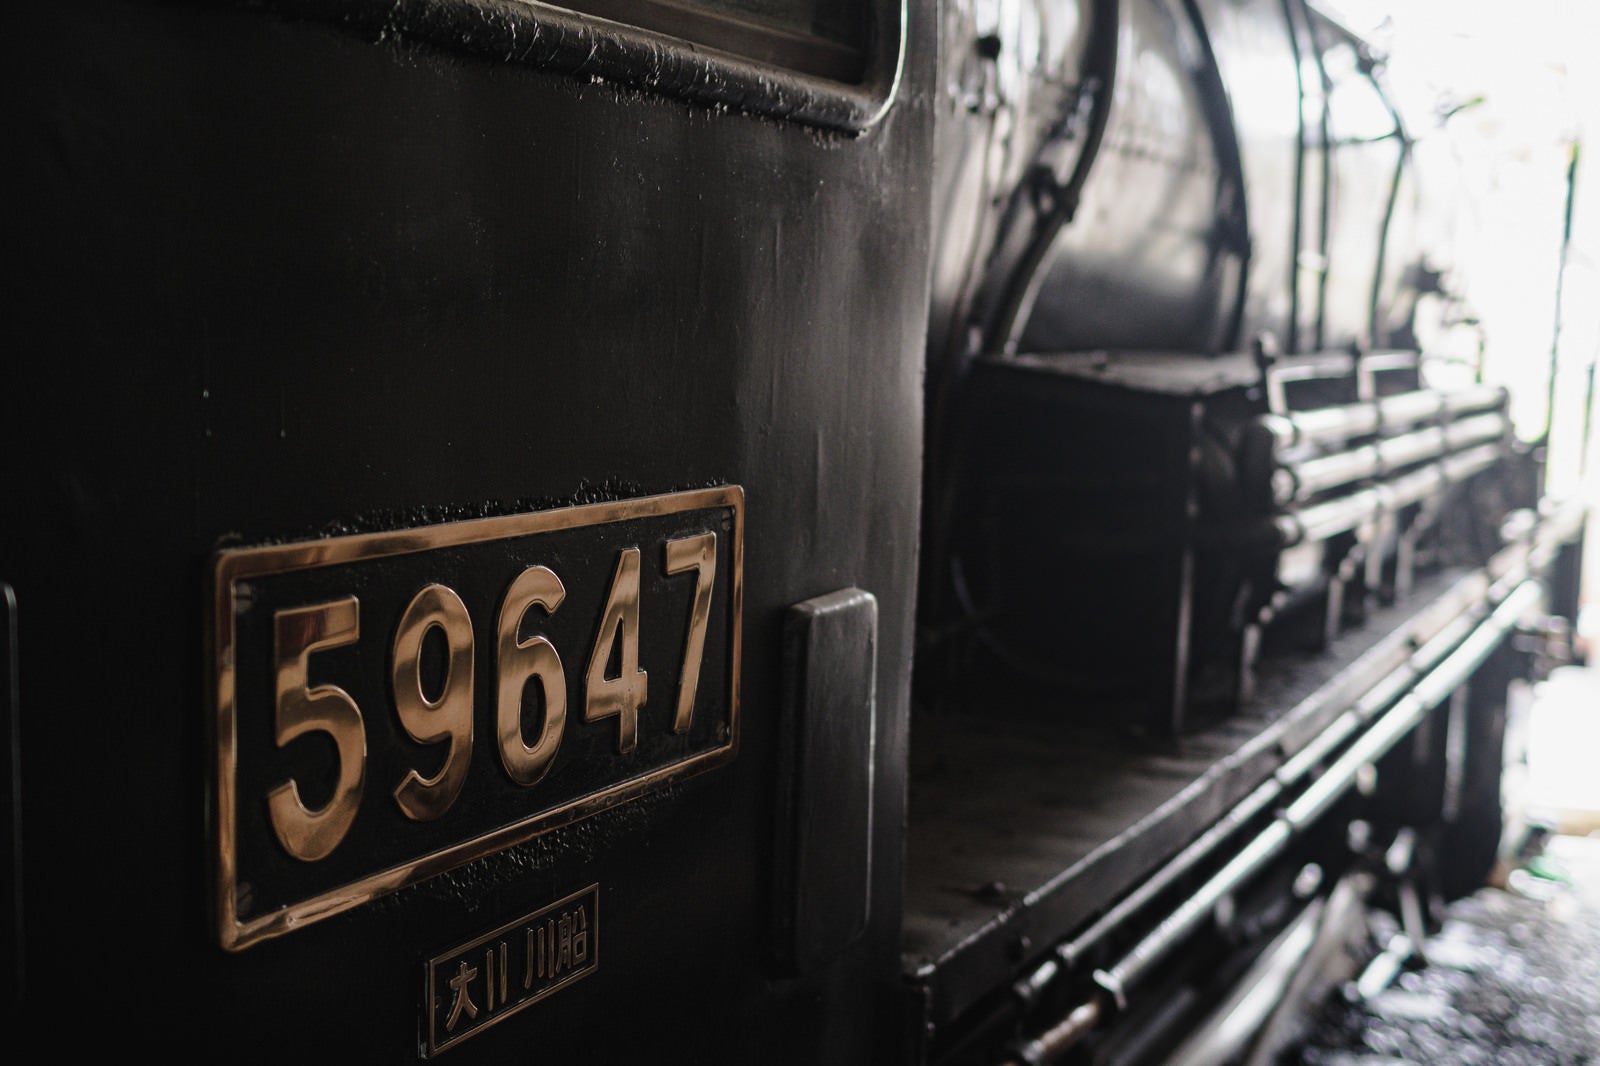 「蒸気機関車「59647」と書かれた側面」の写真